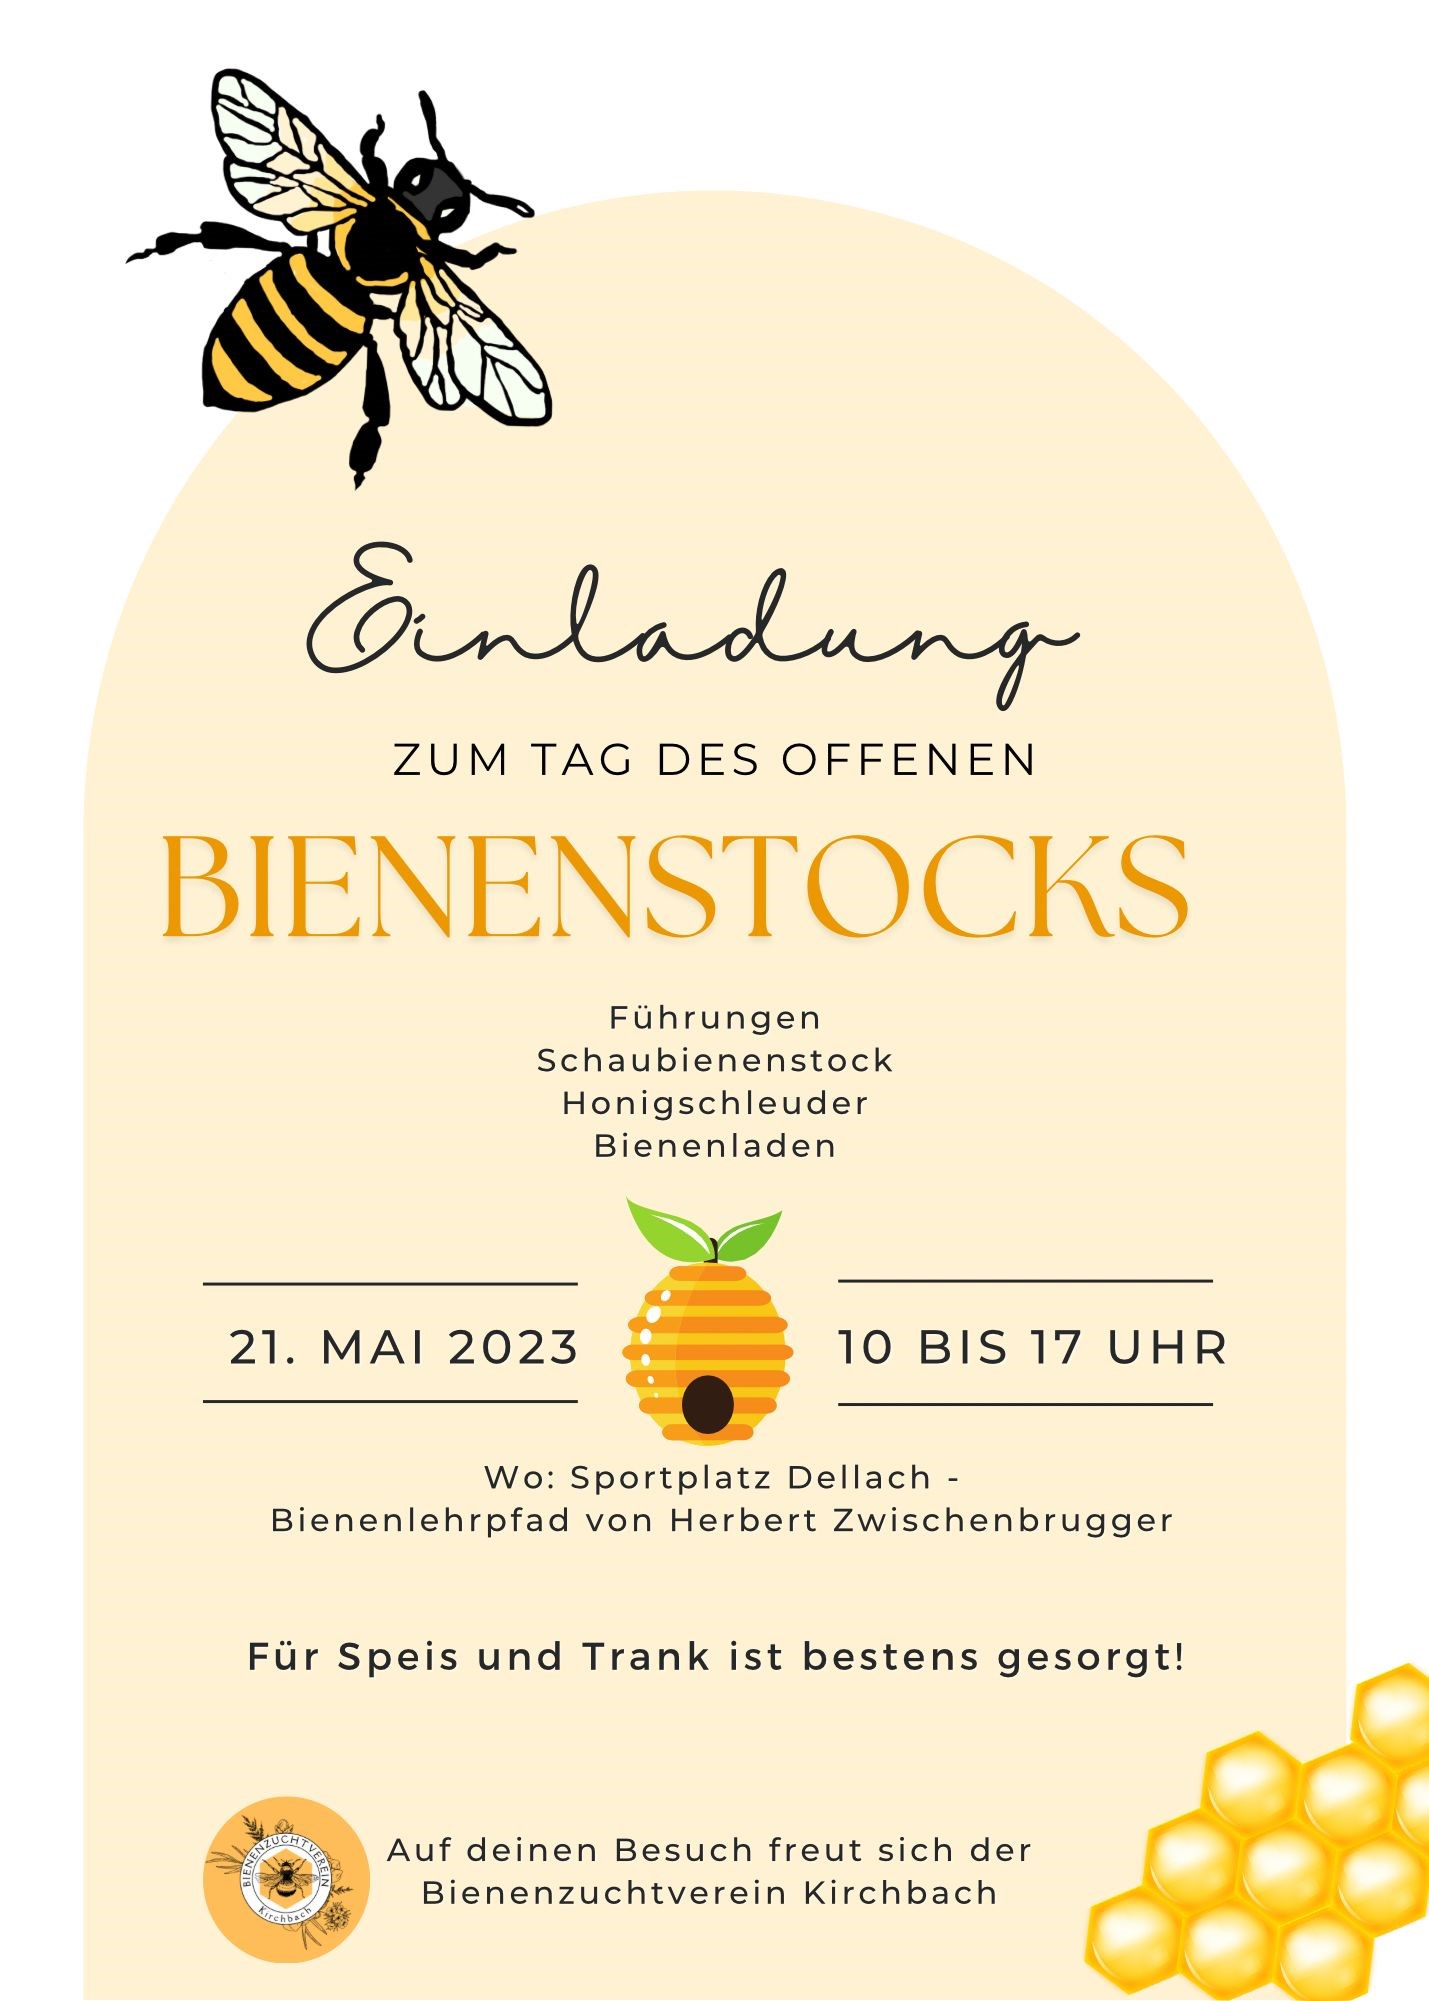 Veranstaltung des Bienenzuchtvereins Kirchbach © BZV Hermagor